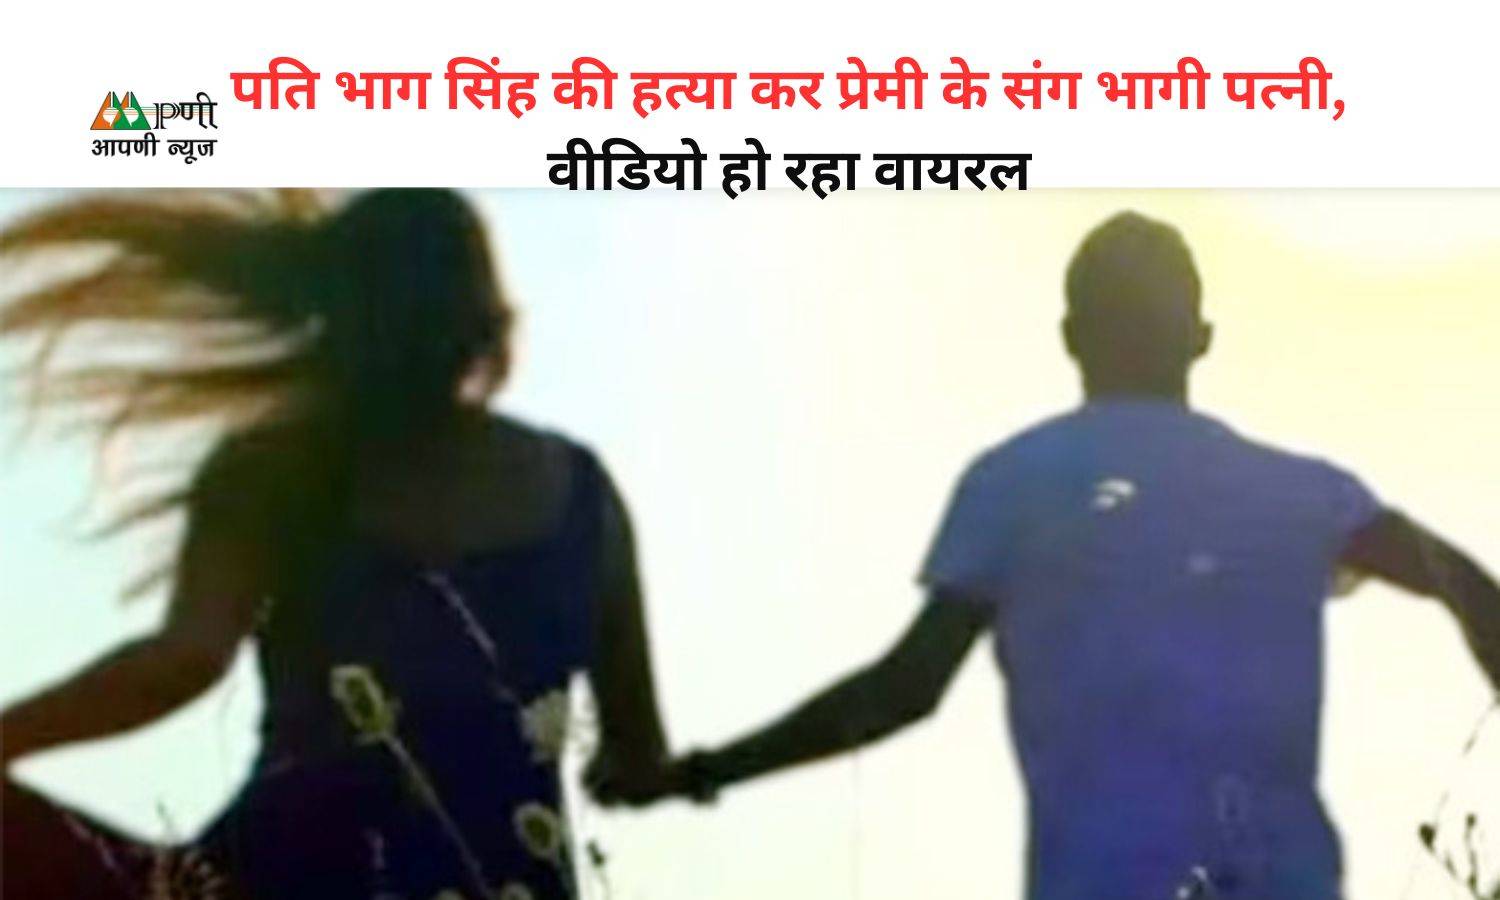 Viral News: पति भाग सिंह की हत्या कर प्रेमी के संग भागी पत्नी, वीडियो हो रहा वायरल